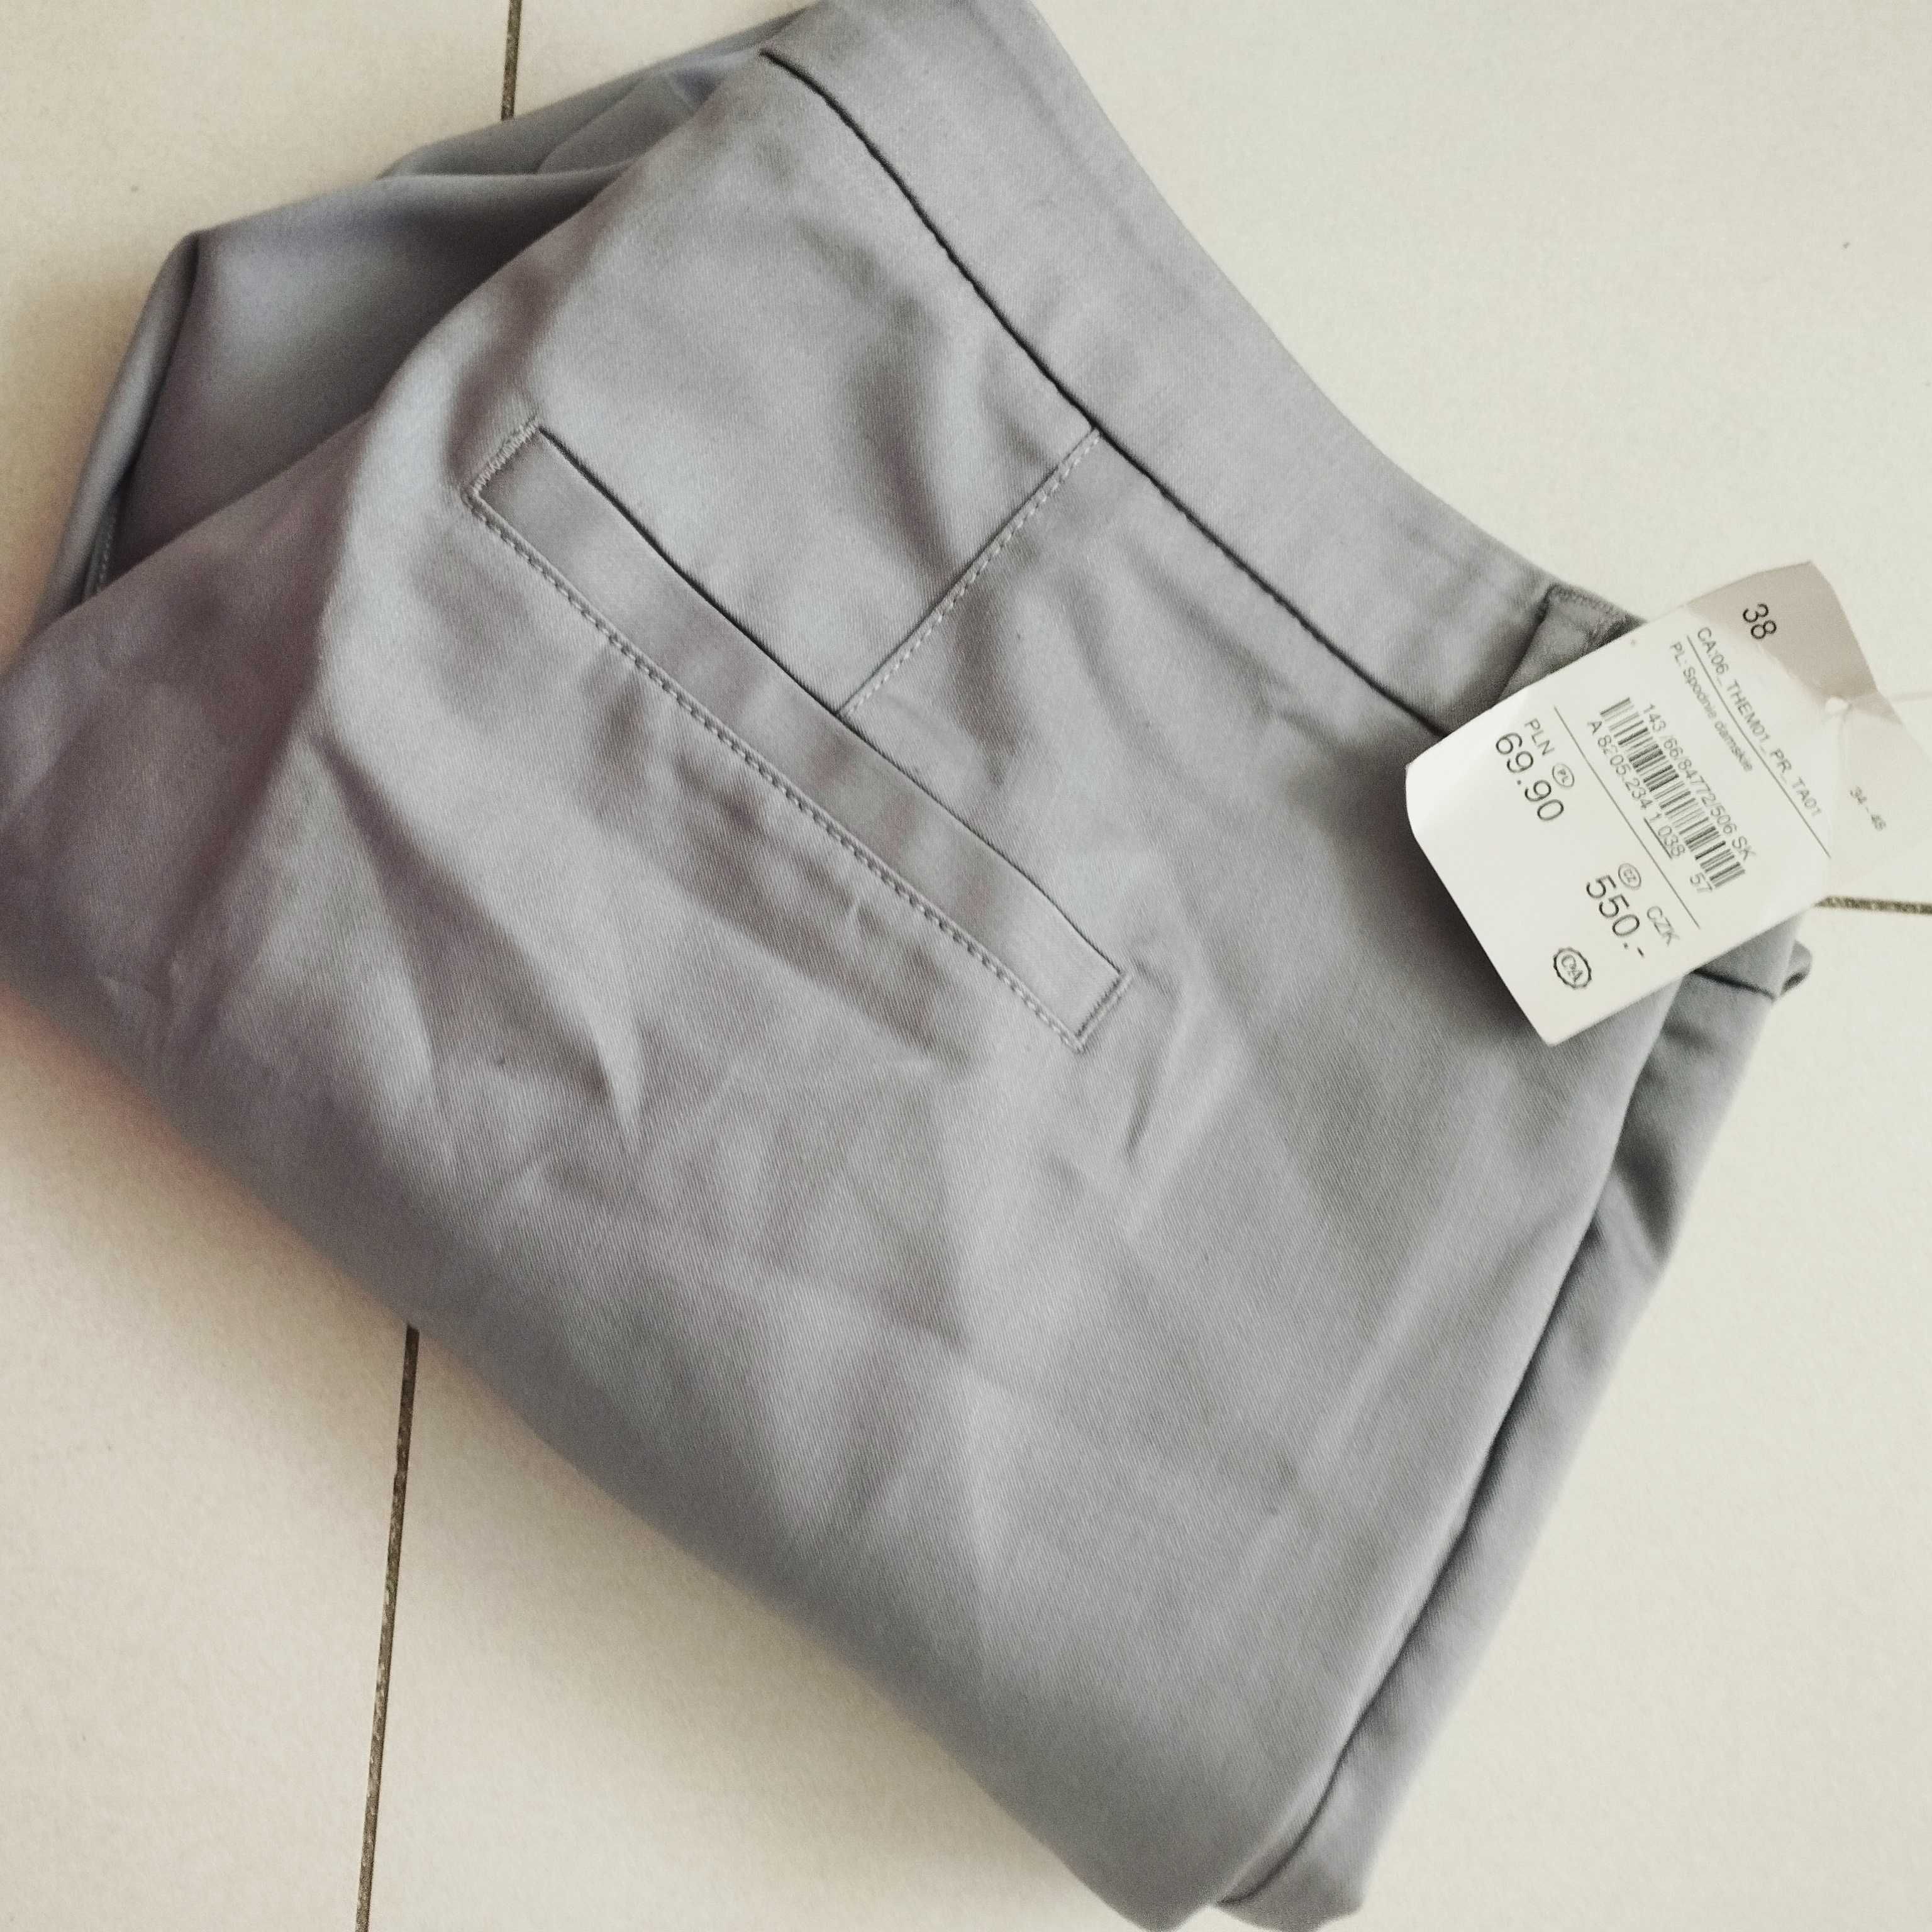 Spodnie damskie 38/40/42 C&A proste nogawki z kantem szare eleganckie